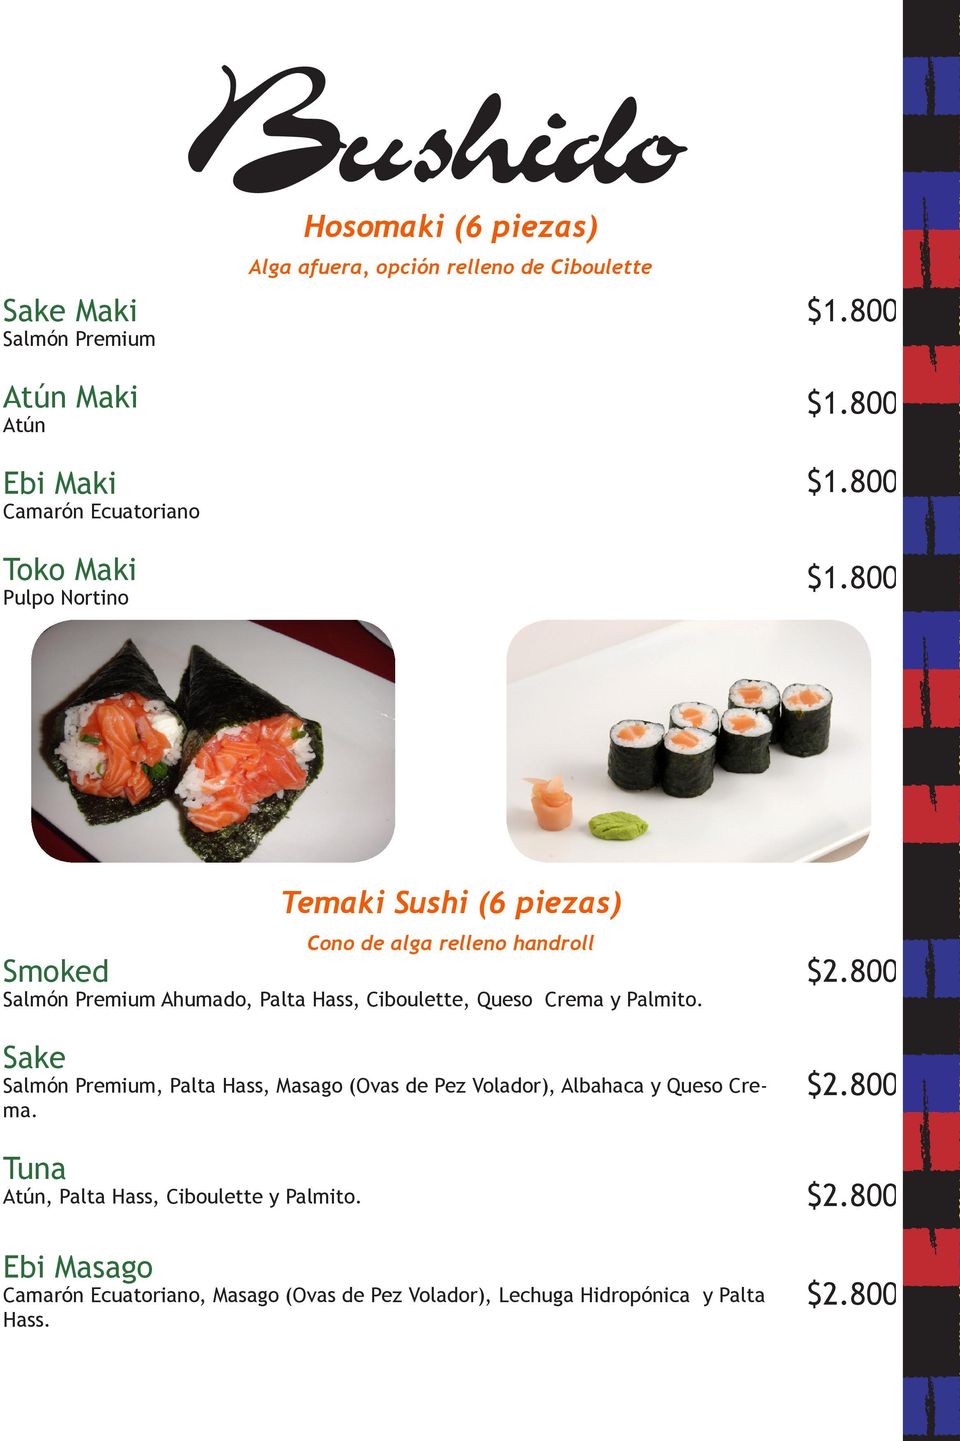 800 $1.800 $1.800 Temaki Sushi (6 piezas) Cono de alga relleno handroll Smoked Salmón Premium Ahumado, Palta Hass, Ciboulette, Queso Crema y Palmito.